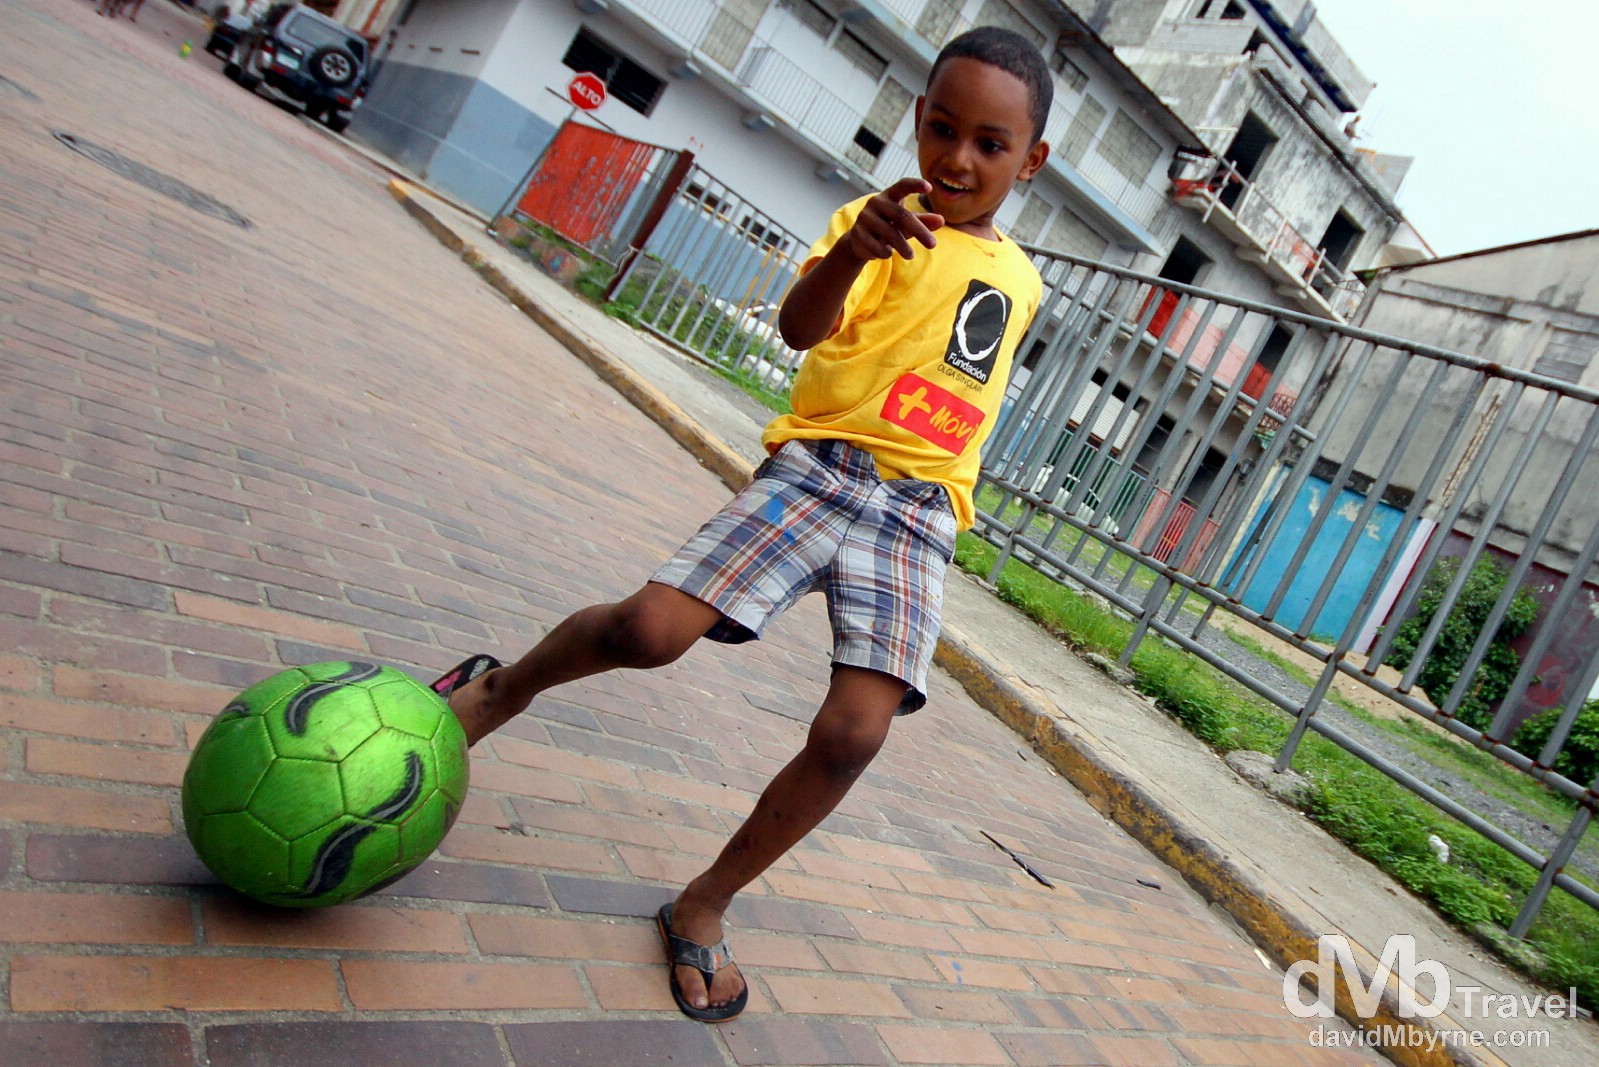 Soccer on the streets of Casco Viejo, Panama City, Panama. July 1st 2013.